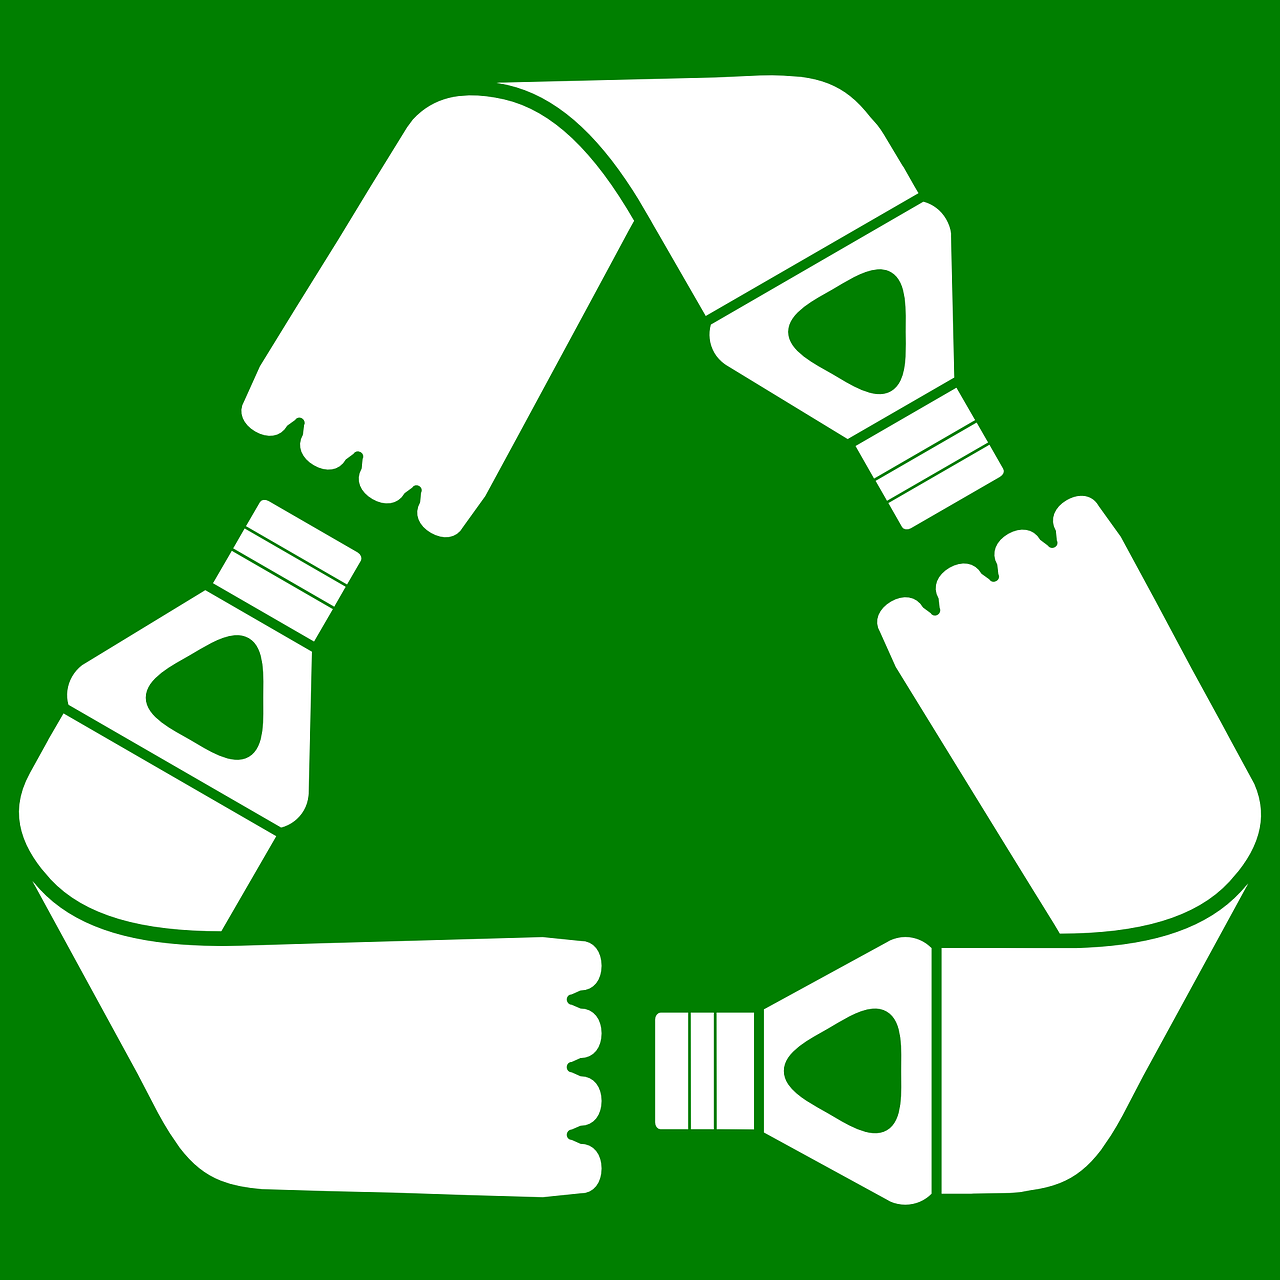 Directivas y legislación aplicable sobre plástico reciclado en envases